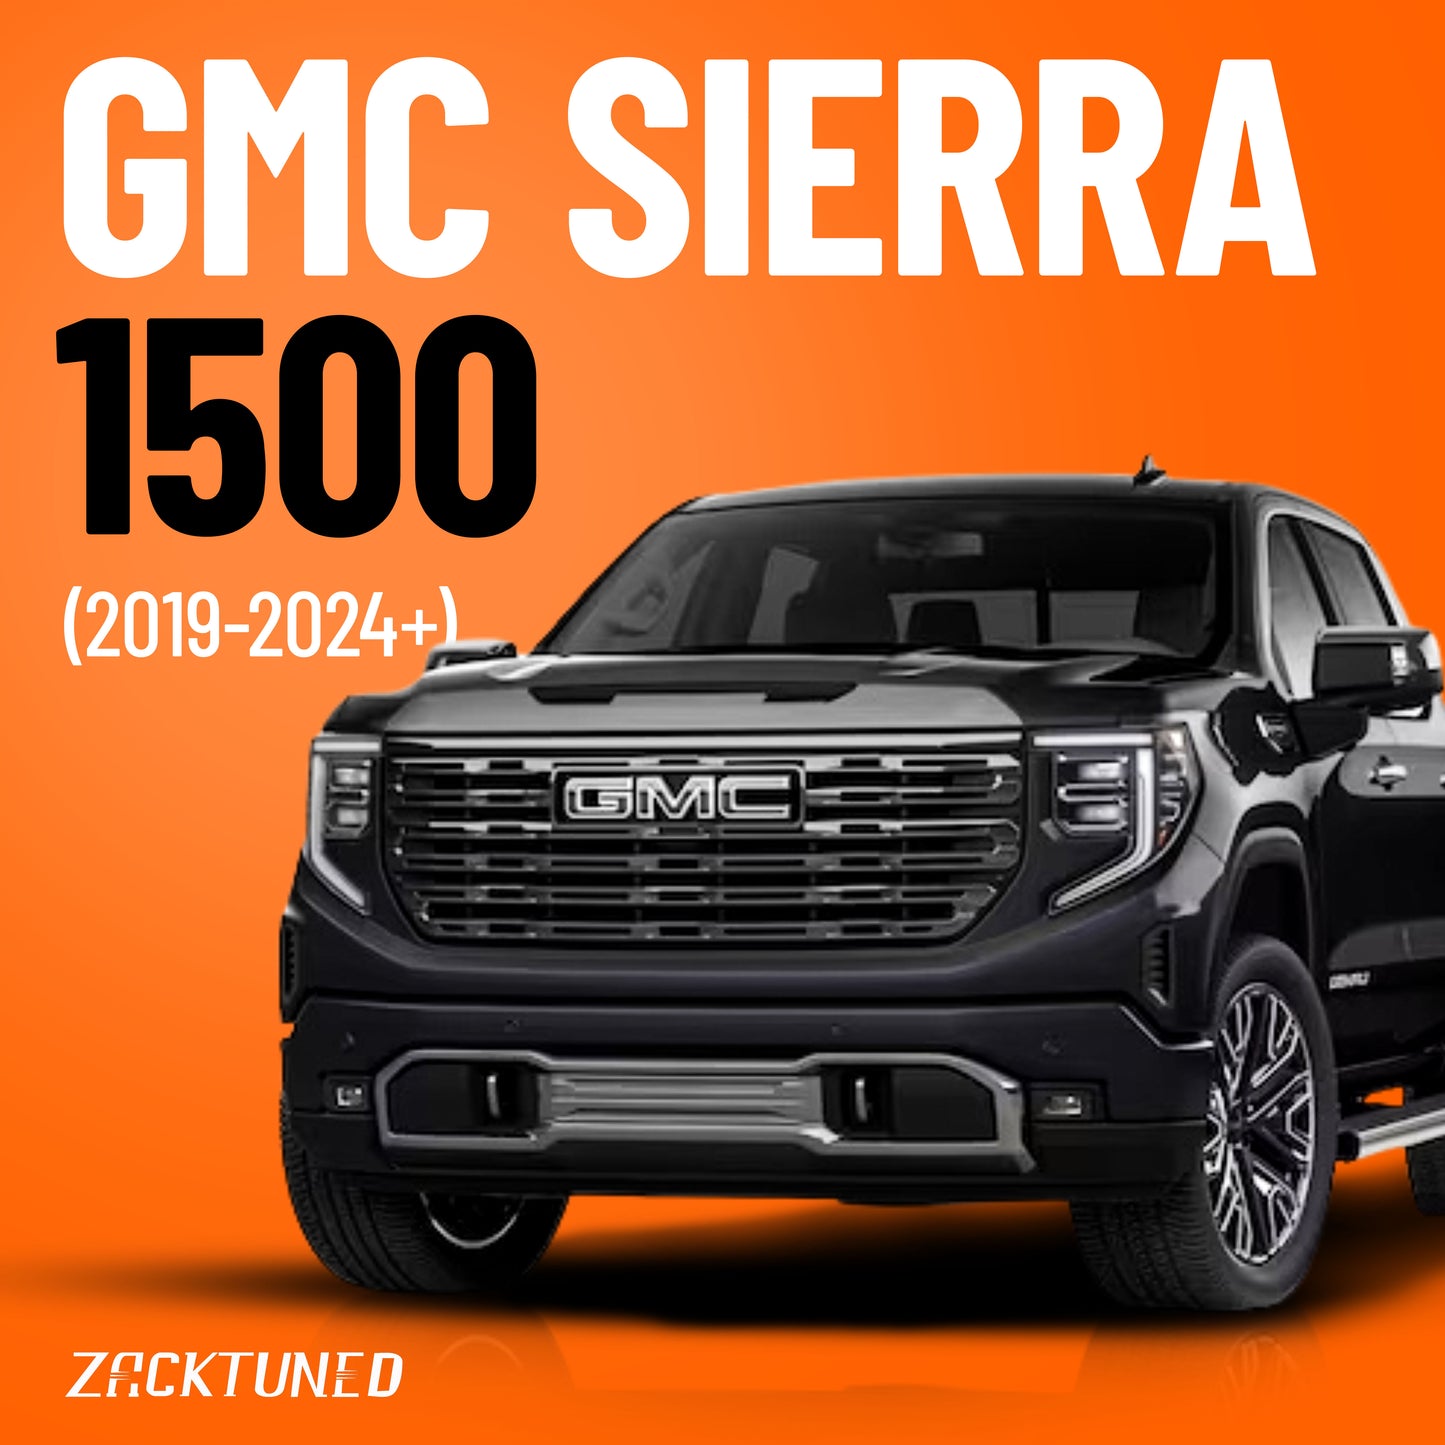 GMC Sierra 1500 (2019-2024+)